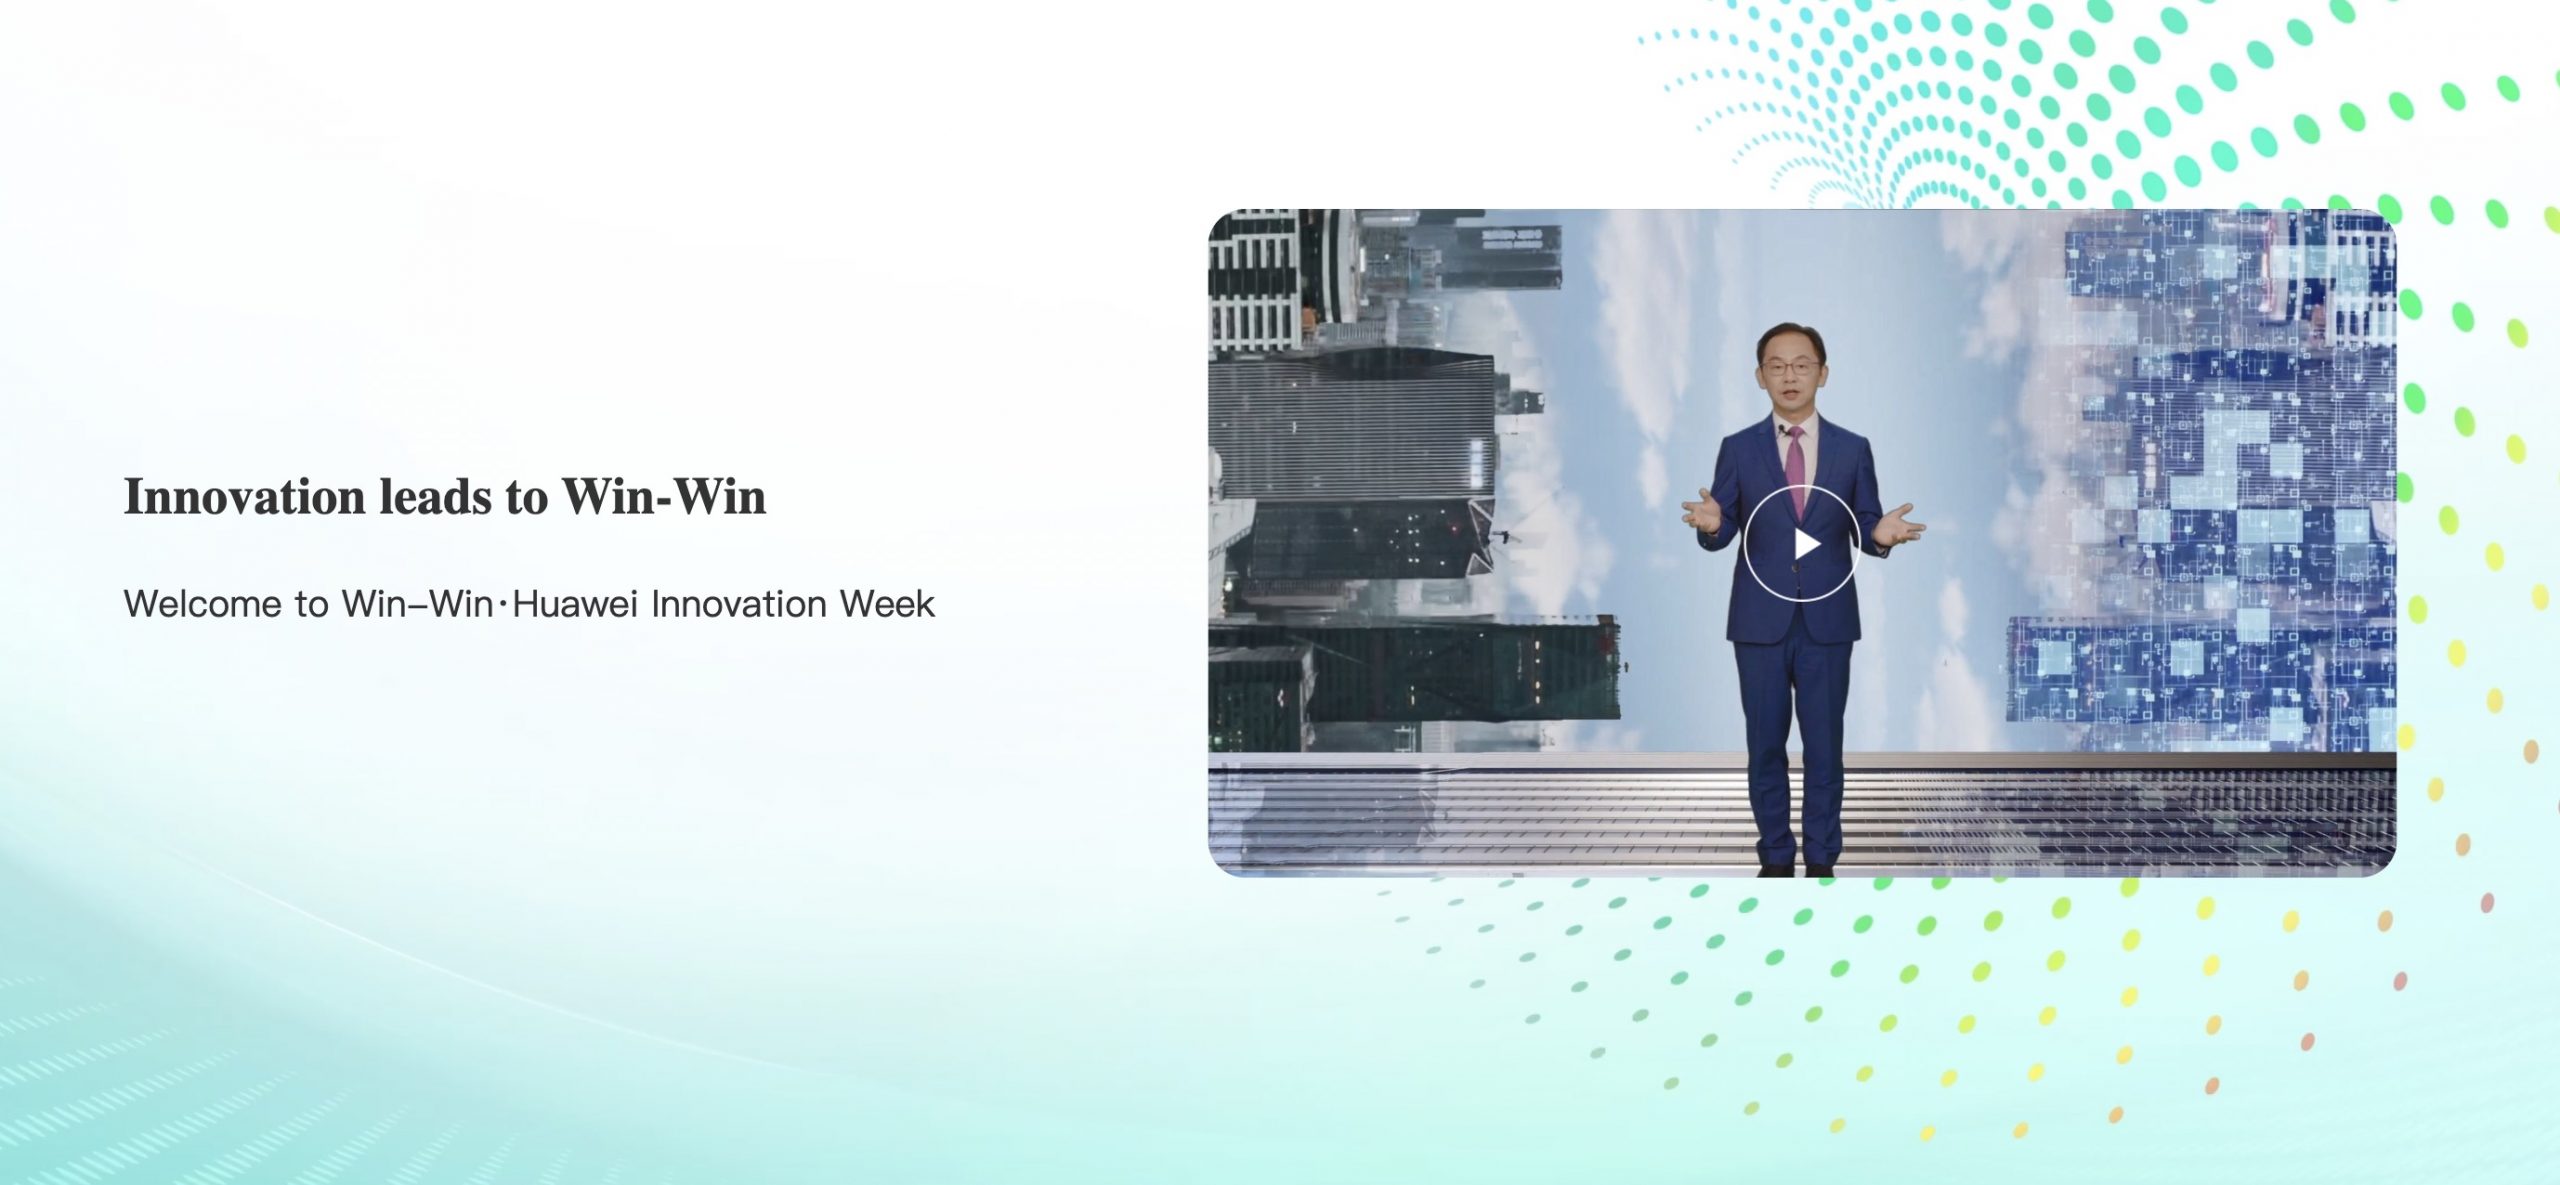 Giám đốc điều hành Hội đồng quản trị của Huawei, ông David Wang: ‘Đổi mới sáng tạo và Thắp sáng kỷ nguyên 5.5G’